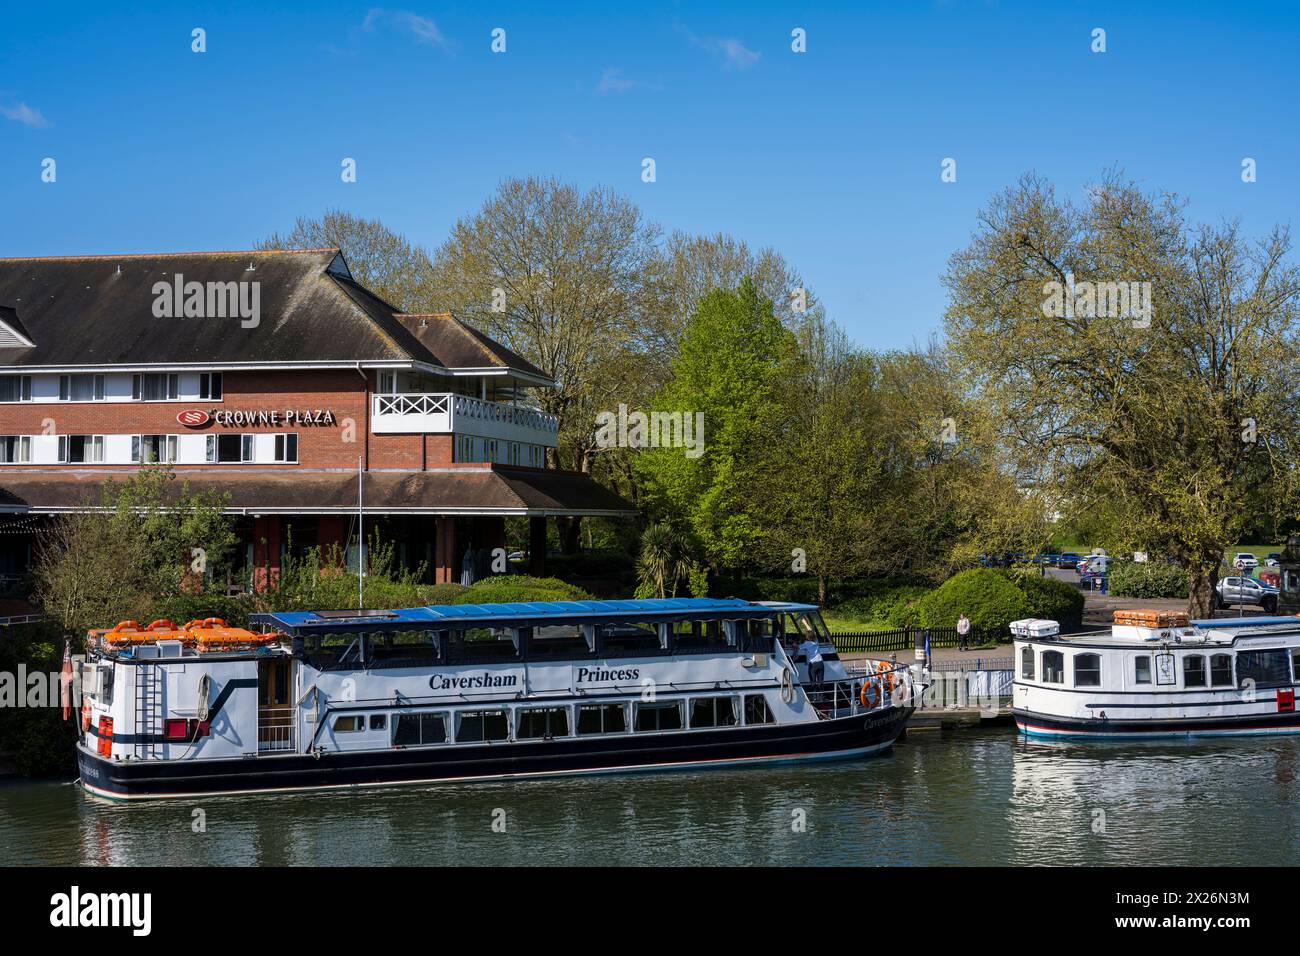 Crown Plaza und Caversham Princes Vergnügungsboot, Themse, Reading, Berkshire, England, GROSSBRITANNIEN, GB. Stockfoto